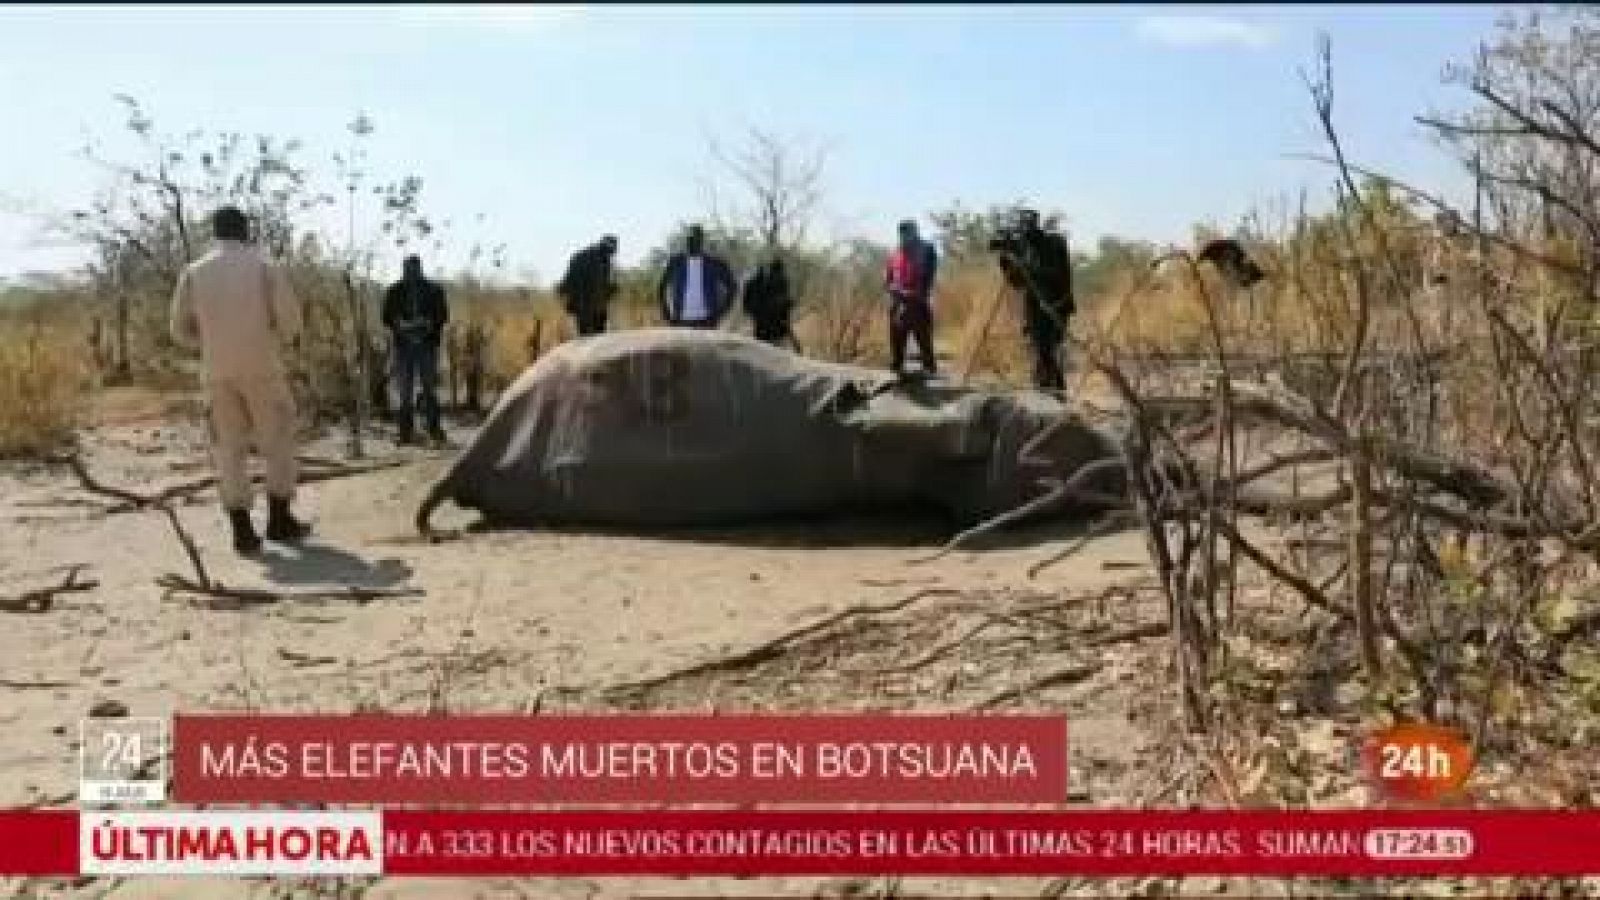 La muerte de cientos de elefantes en Botsuana podría deberse a una neurotoxina - RTVE.es